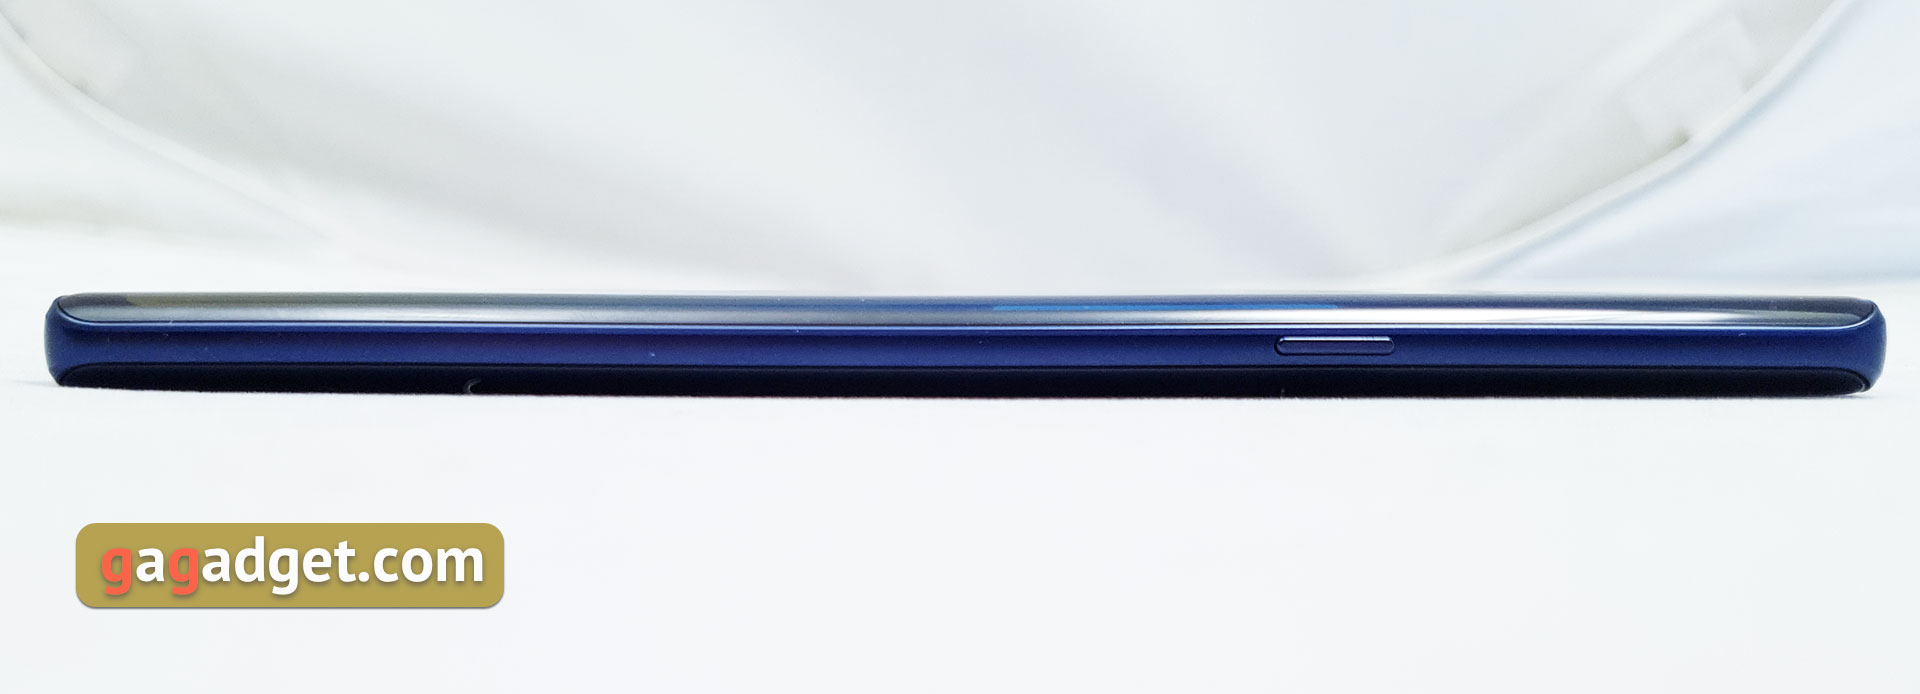 Обзор Samsung Galaxy Note9: максимум технологий и возможностей-13